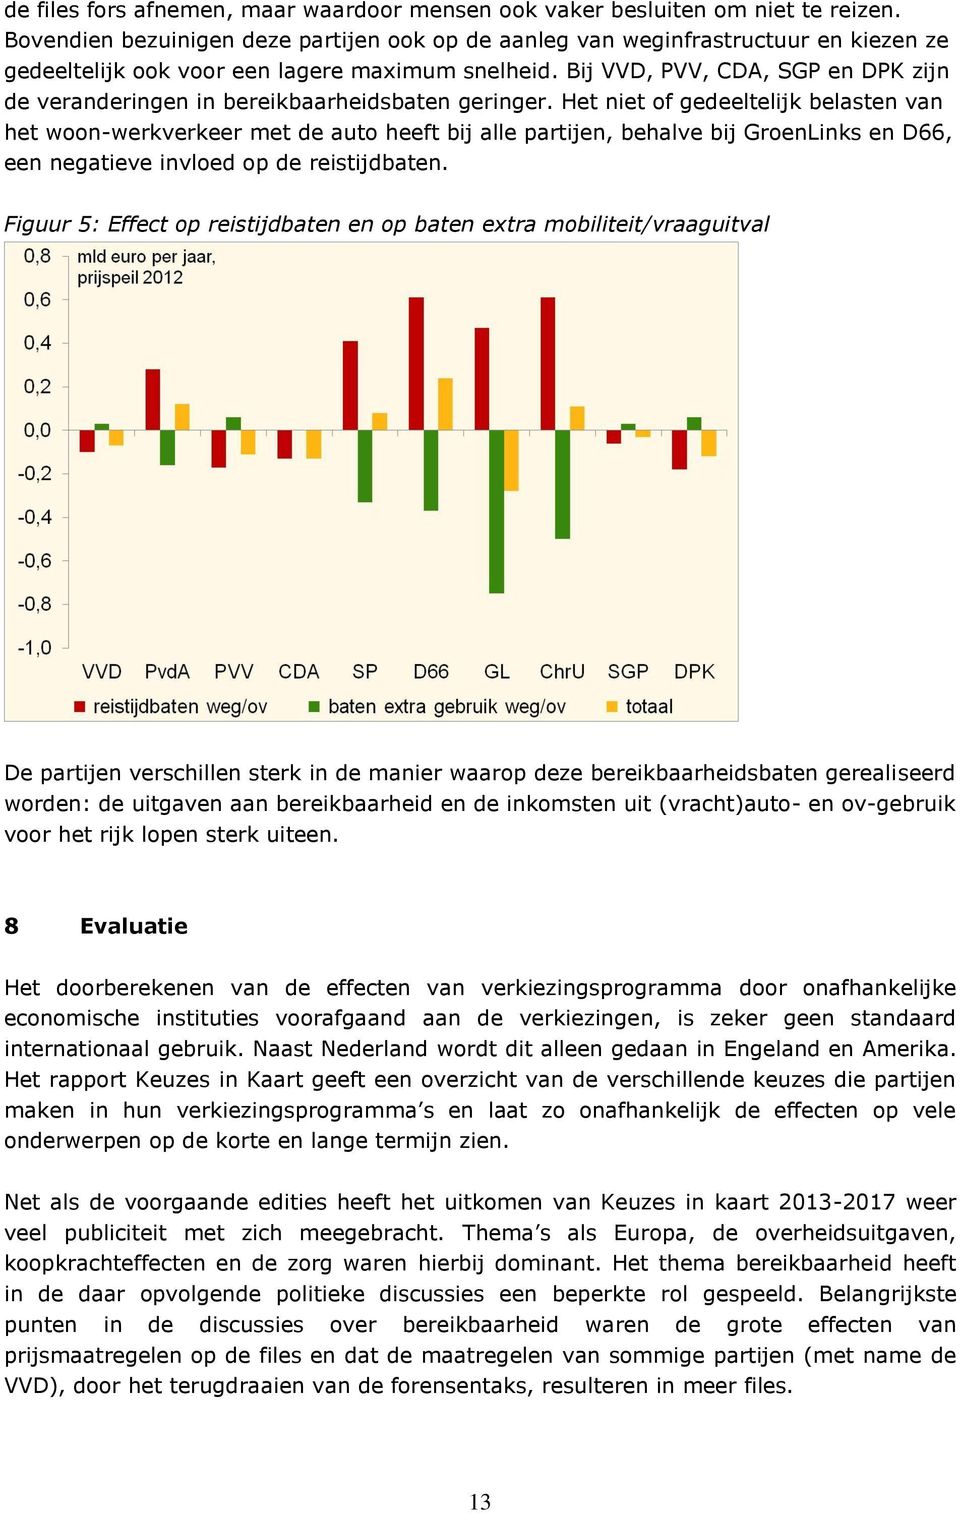 Bij VVD, PVV, CDA, SGP en DPK zijn de veranderingen in bereikbaarheidsbaten geringer.